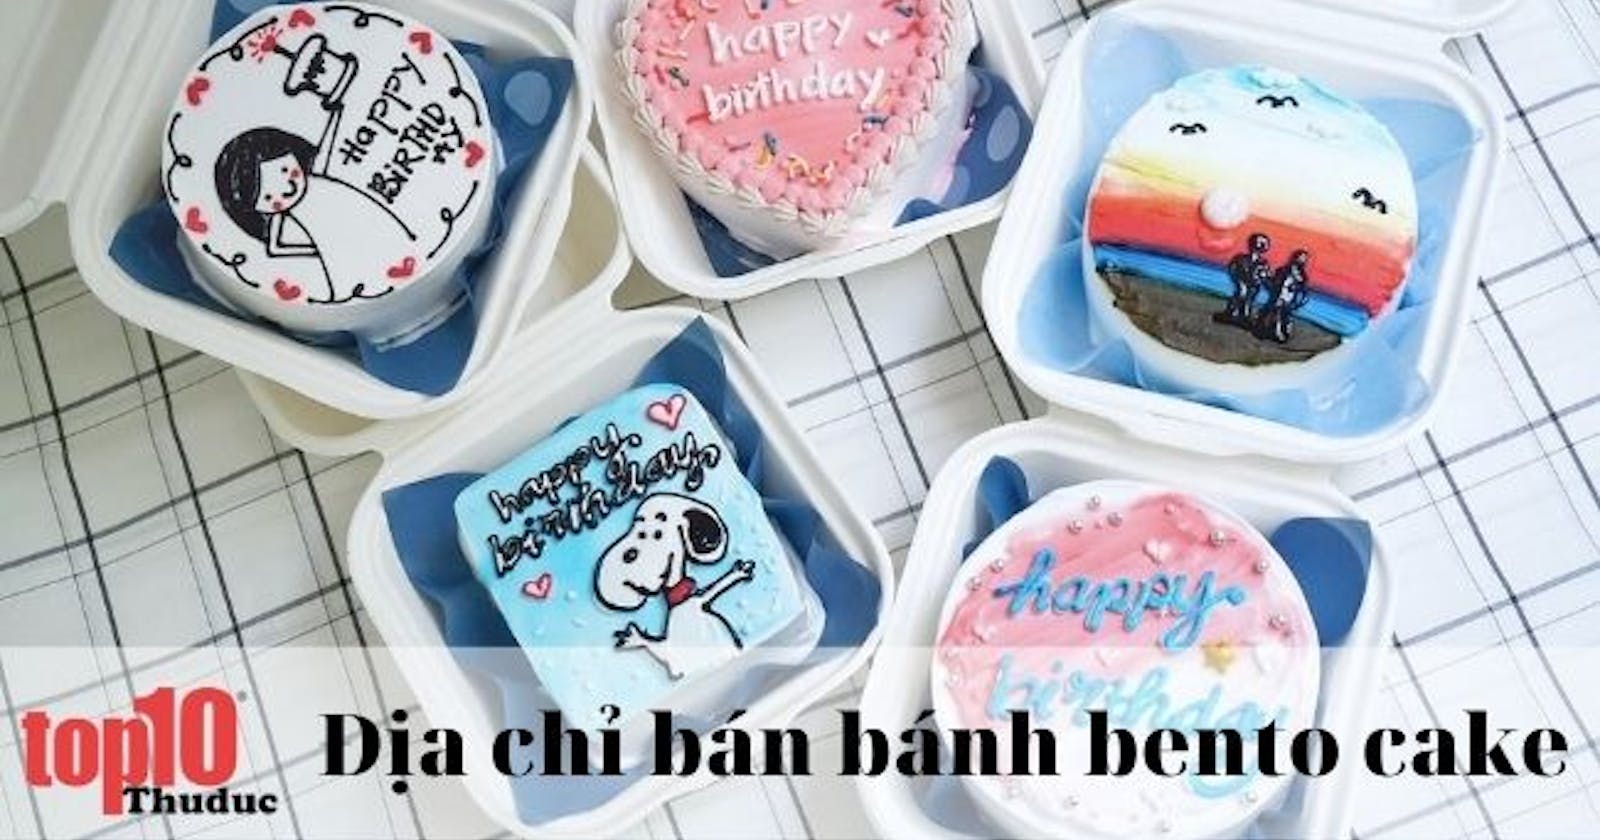 Top 10 tiệm bánh kem Bento Cake siêu ngon tại TPHCM